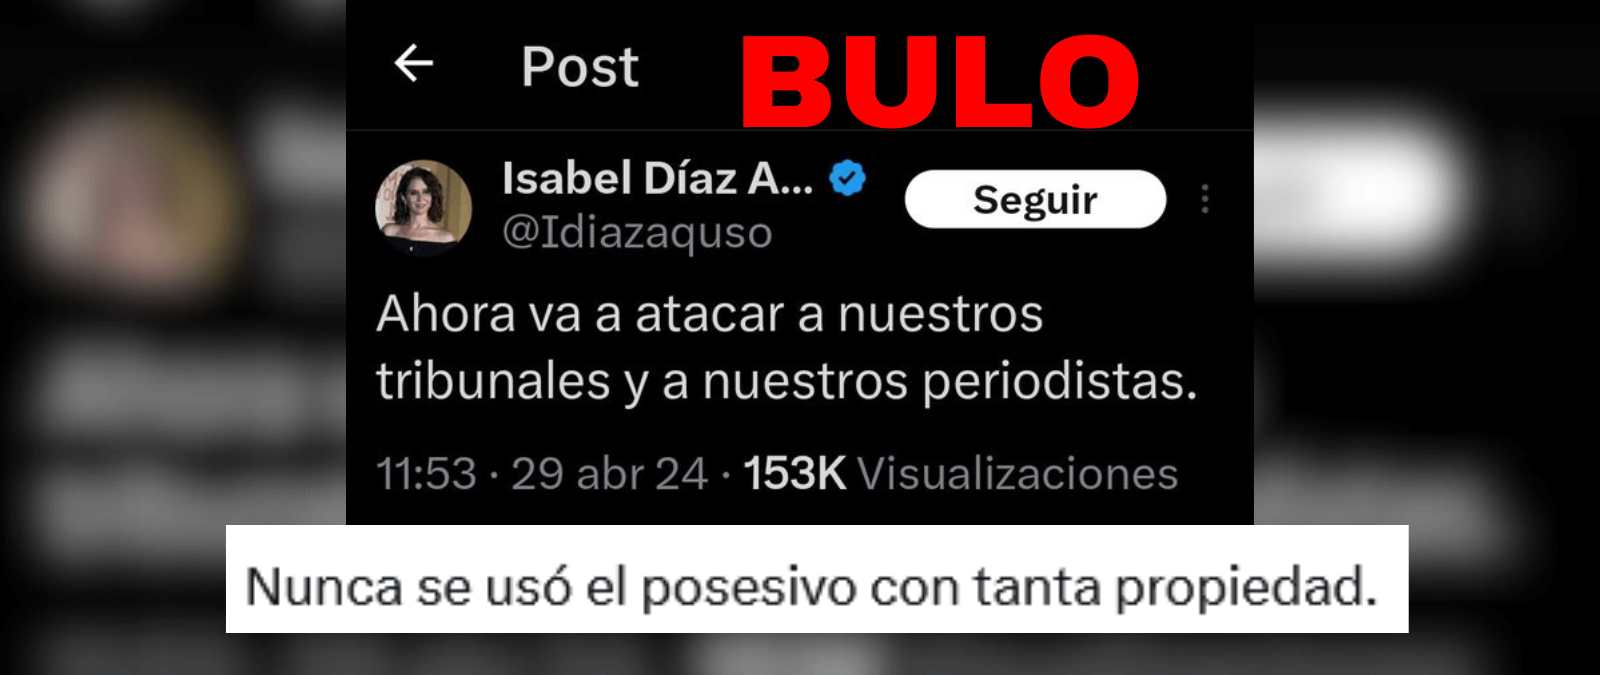 No, Isabel Díaz Ayuso no ha tuiteado “ahora va a atacar a nuestros tribunales y a nuestros periodistas”: es una “cuenta fake”